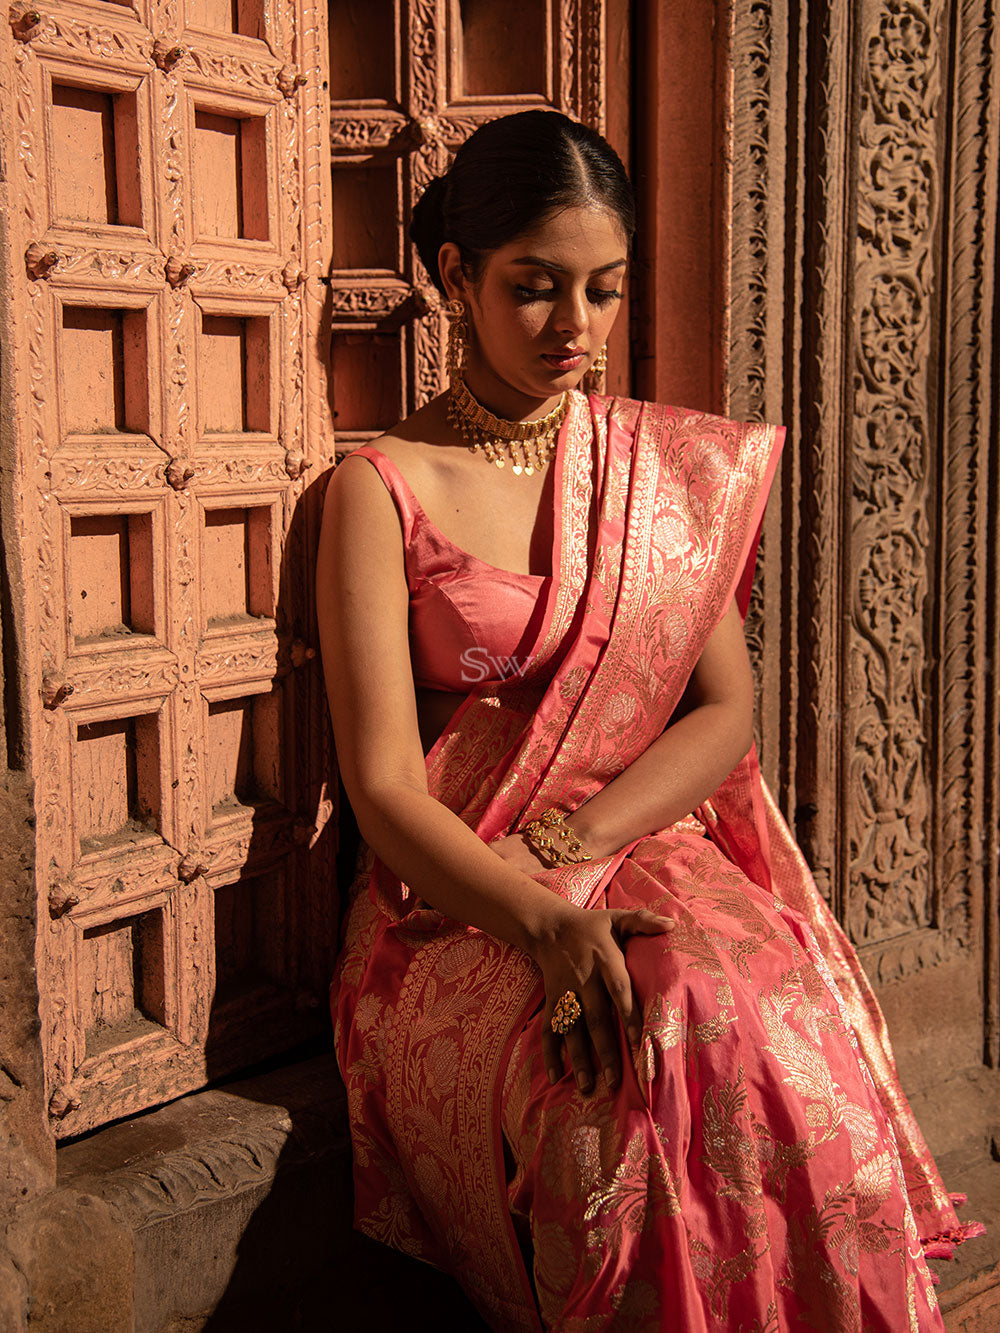 Pink Jaal Katan Silk Handloom Banarasi Saree - Sacred Weaves